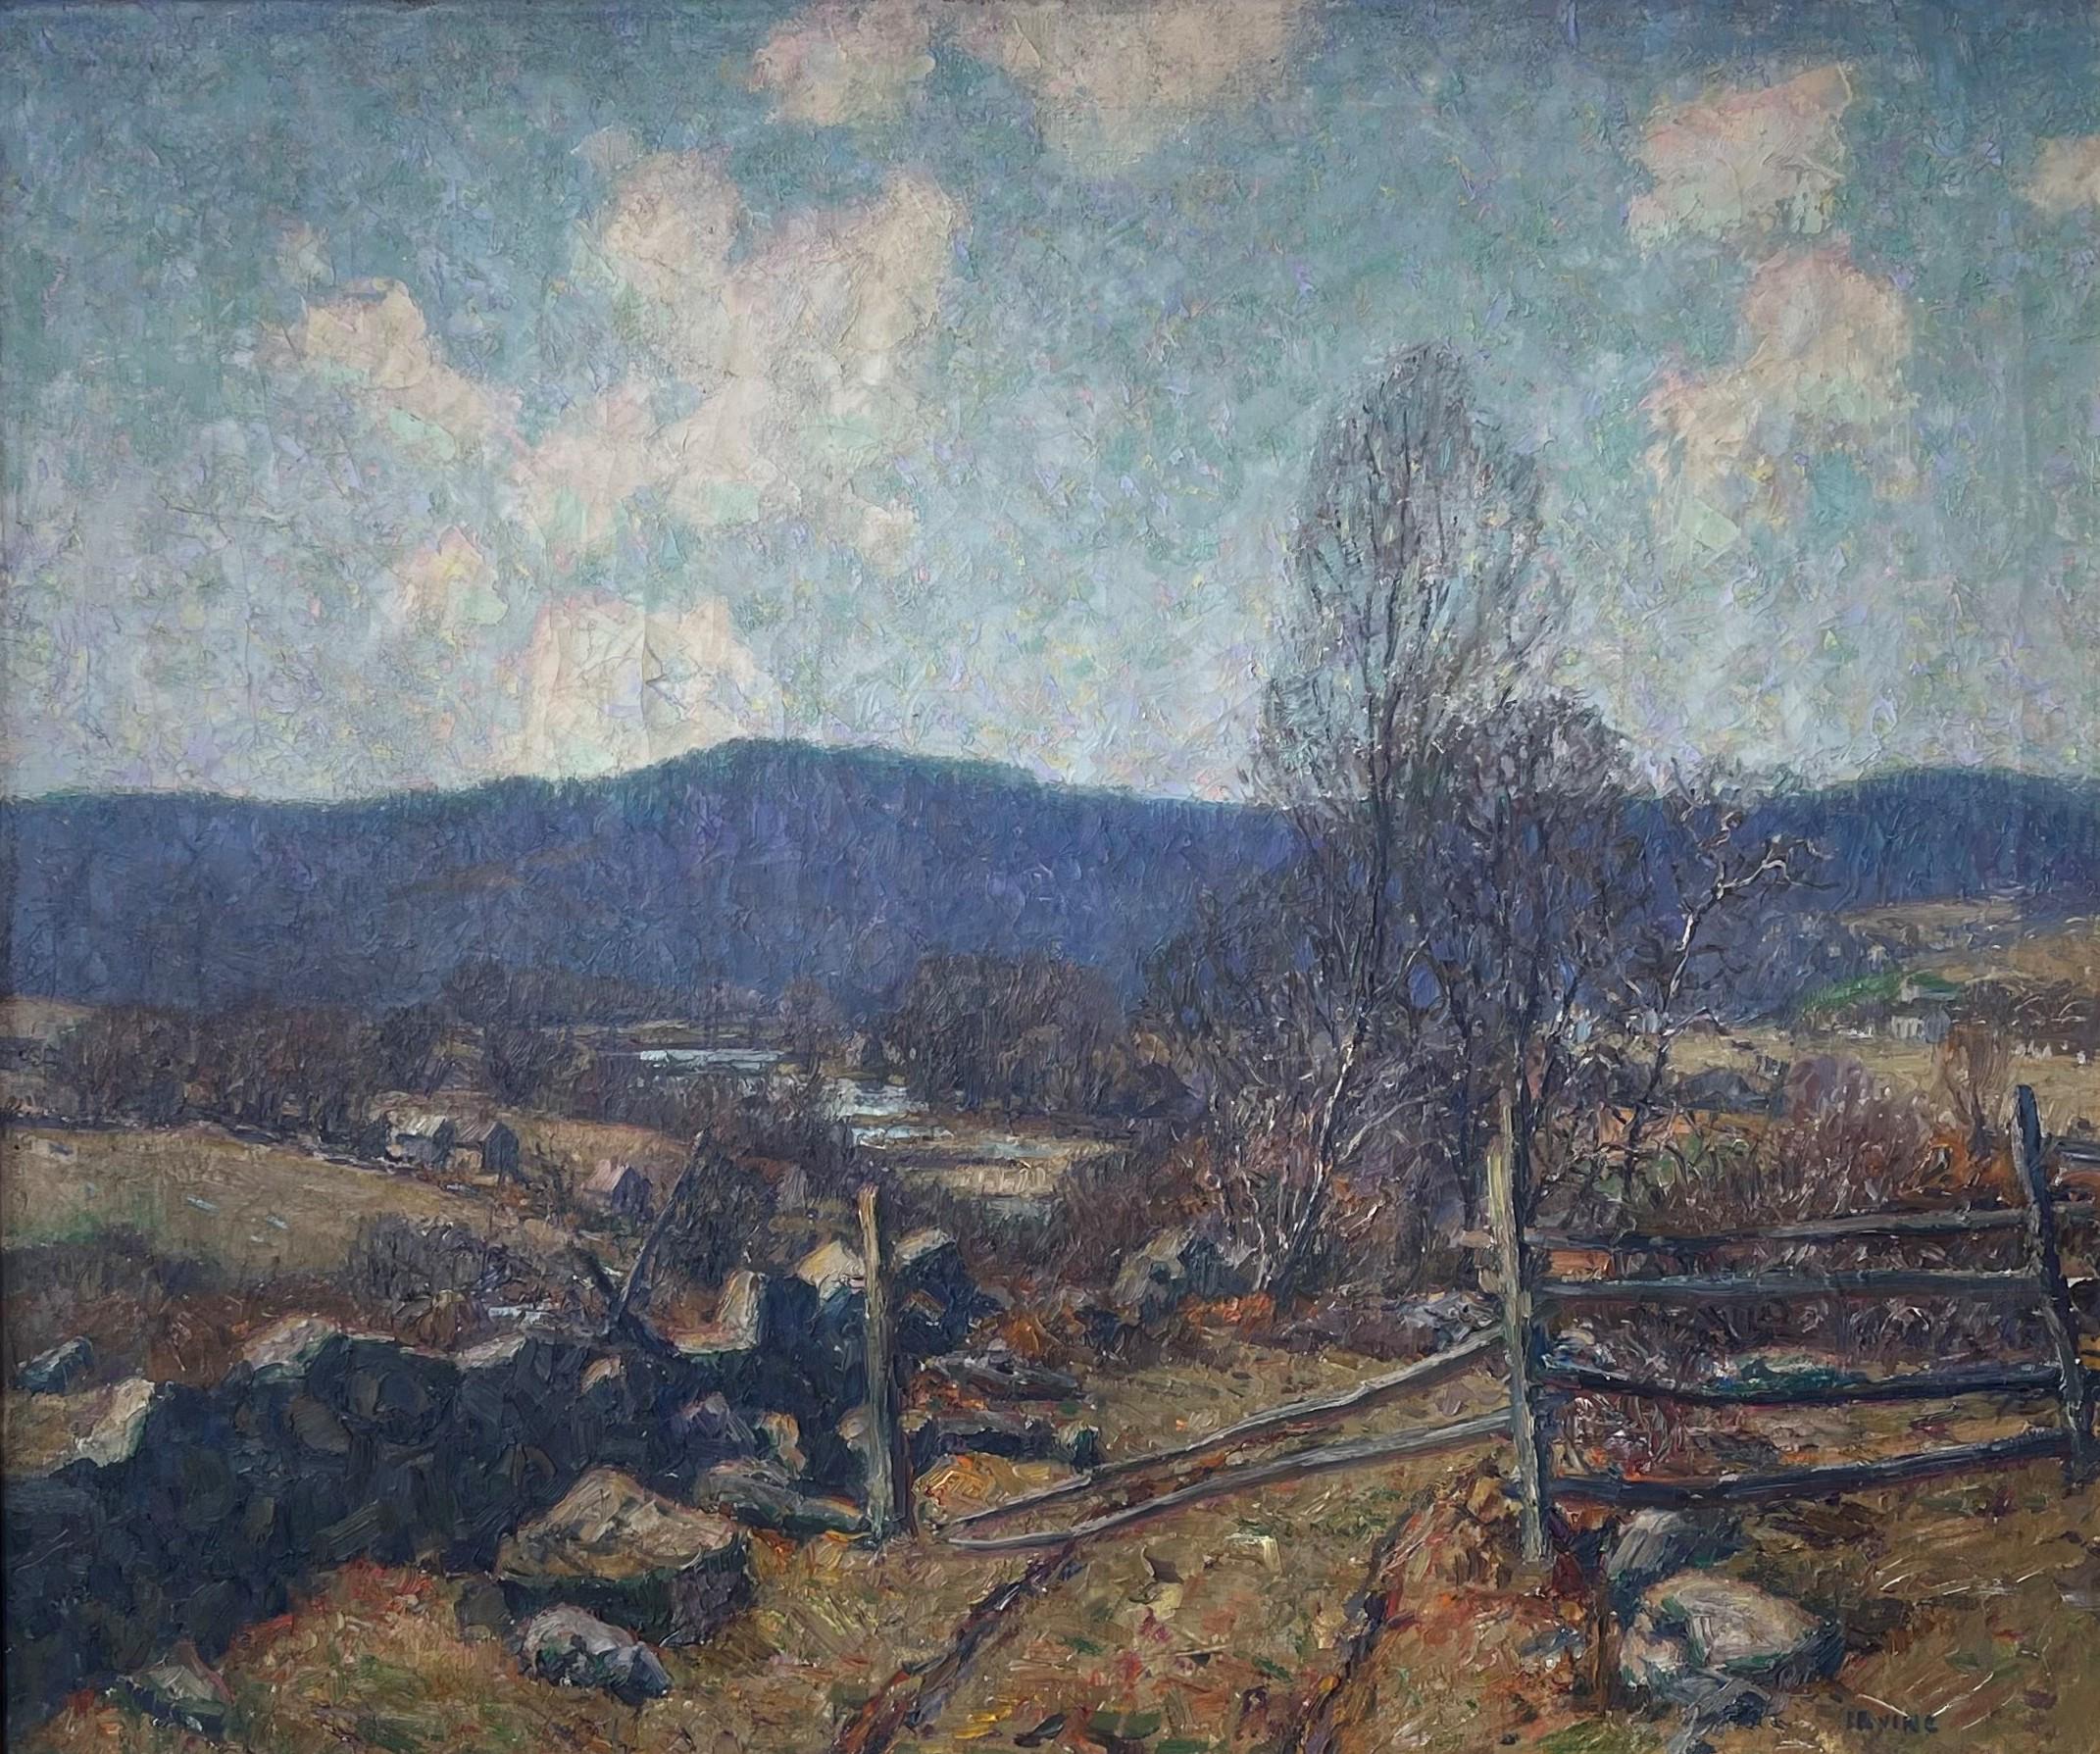  Peinture à l'huile impressionniste américaine Wilson Irvine 1869-1936 Autumn Field - Impressionnisme Painting par Wilson Henry Irvine